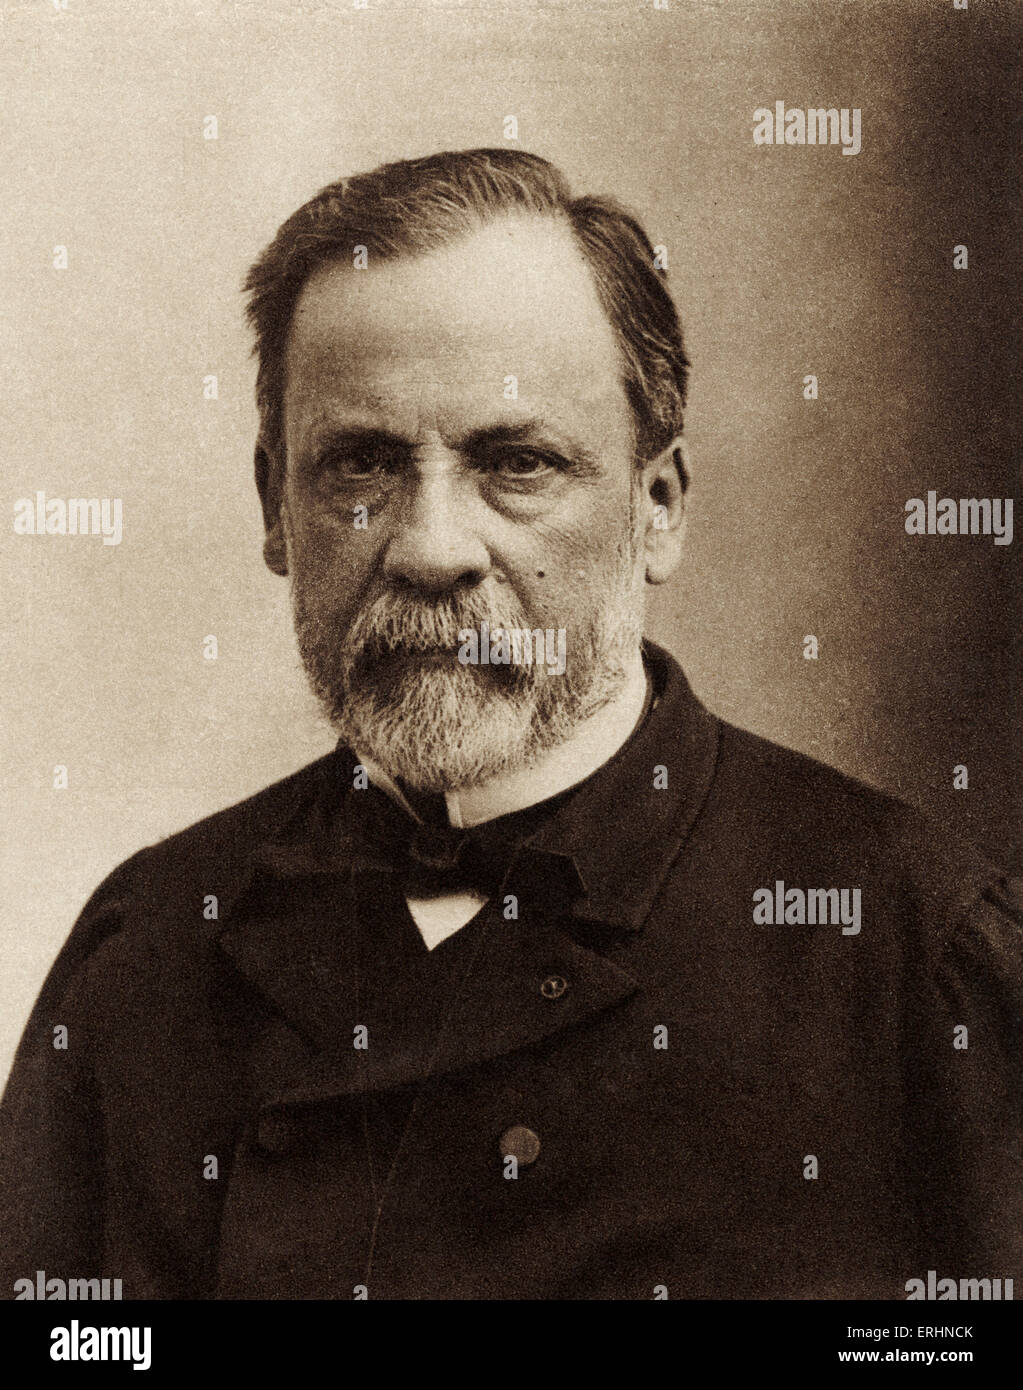 Louis Pasteur - Porträt - französischer Chemiker, Biologen und Begründer der modernen Bakteriologie -27 Dezember 1822 - 28. September 1895 Stockfoto